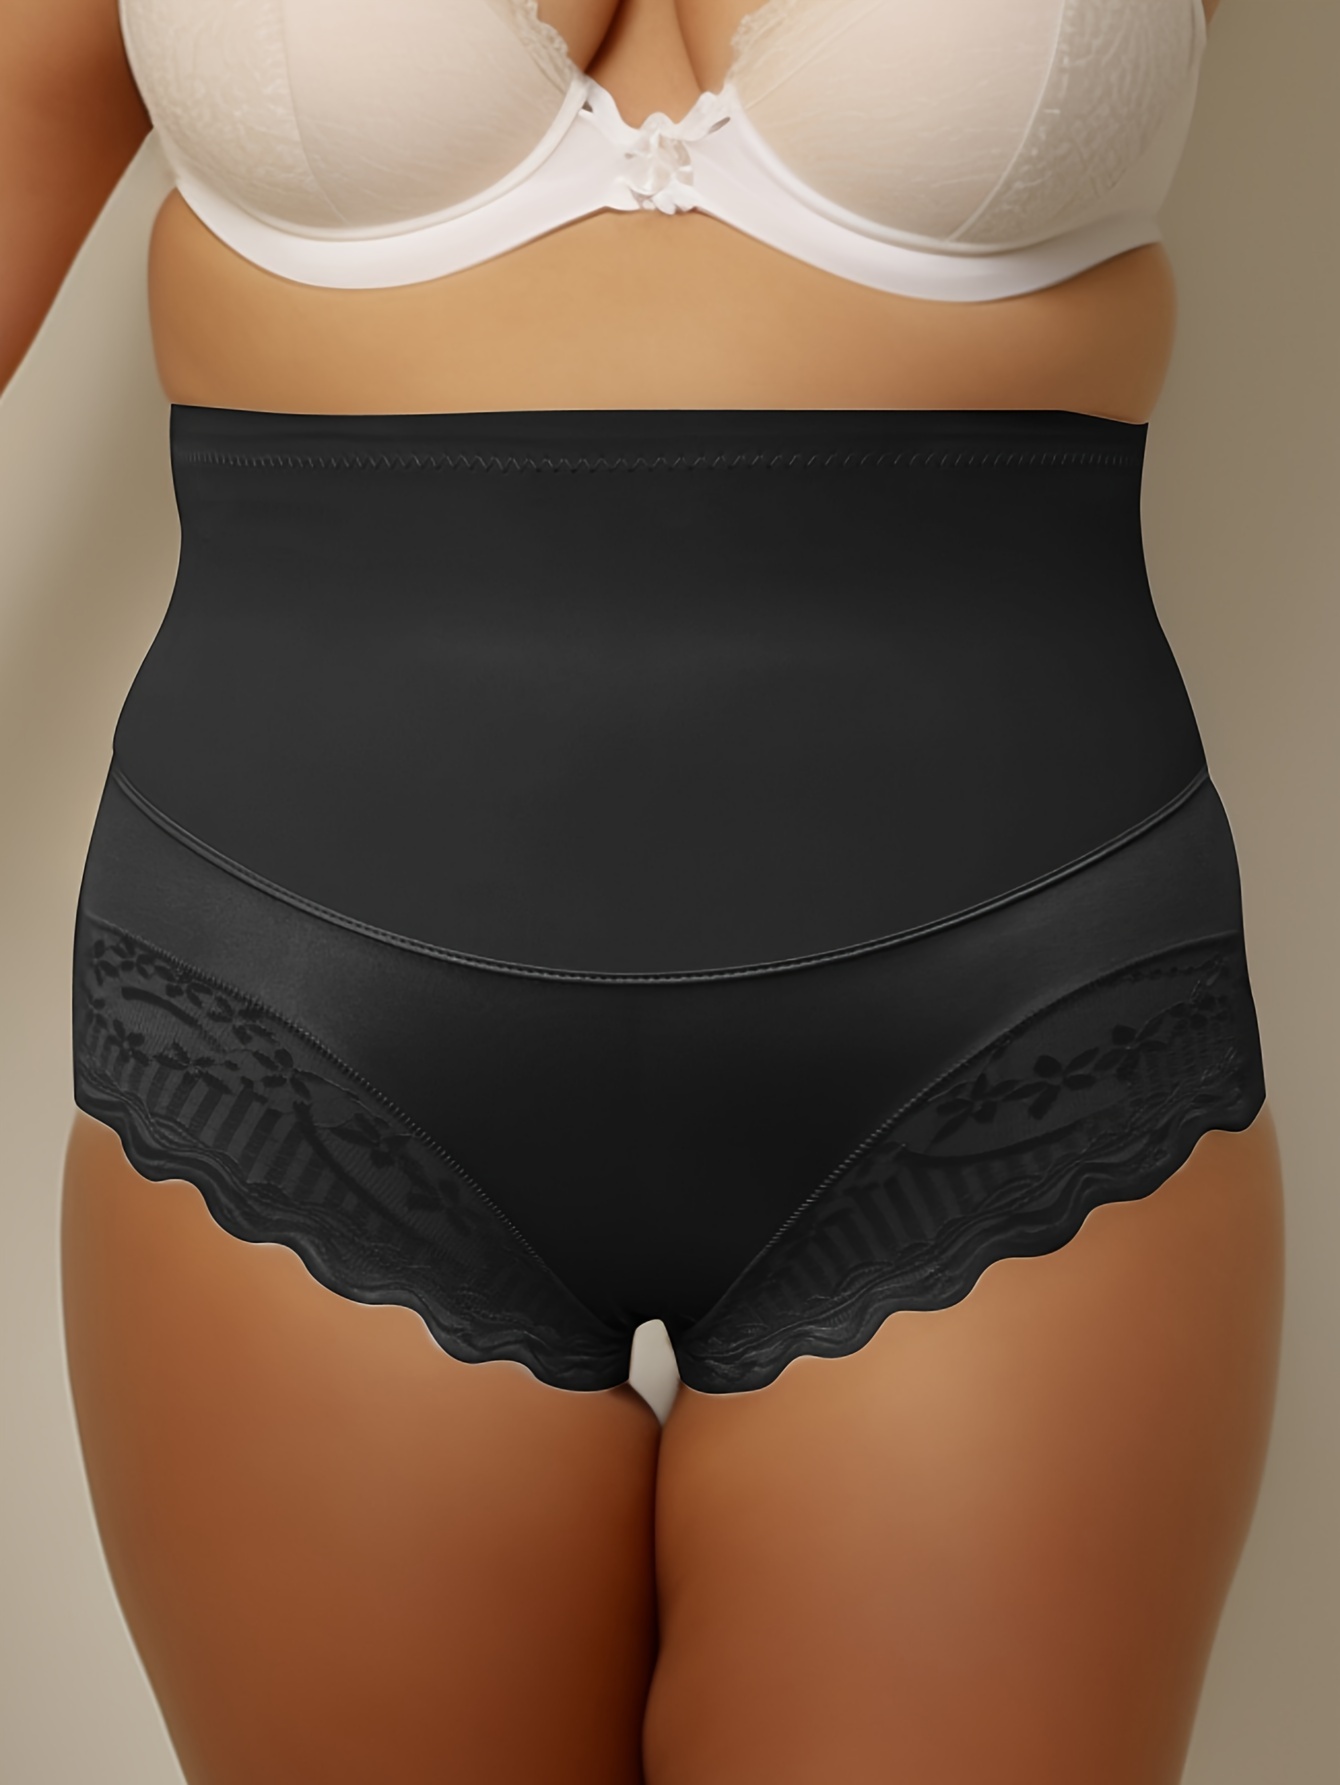 Maidenform Flexees Underwear Beige Tan 2 Pr Medium Tummy Control Brief Panty